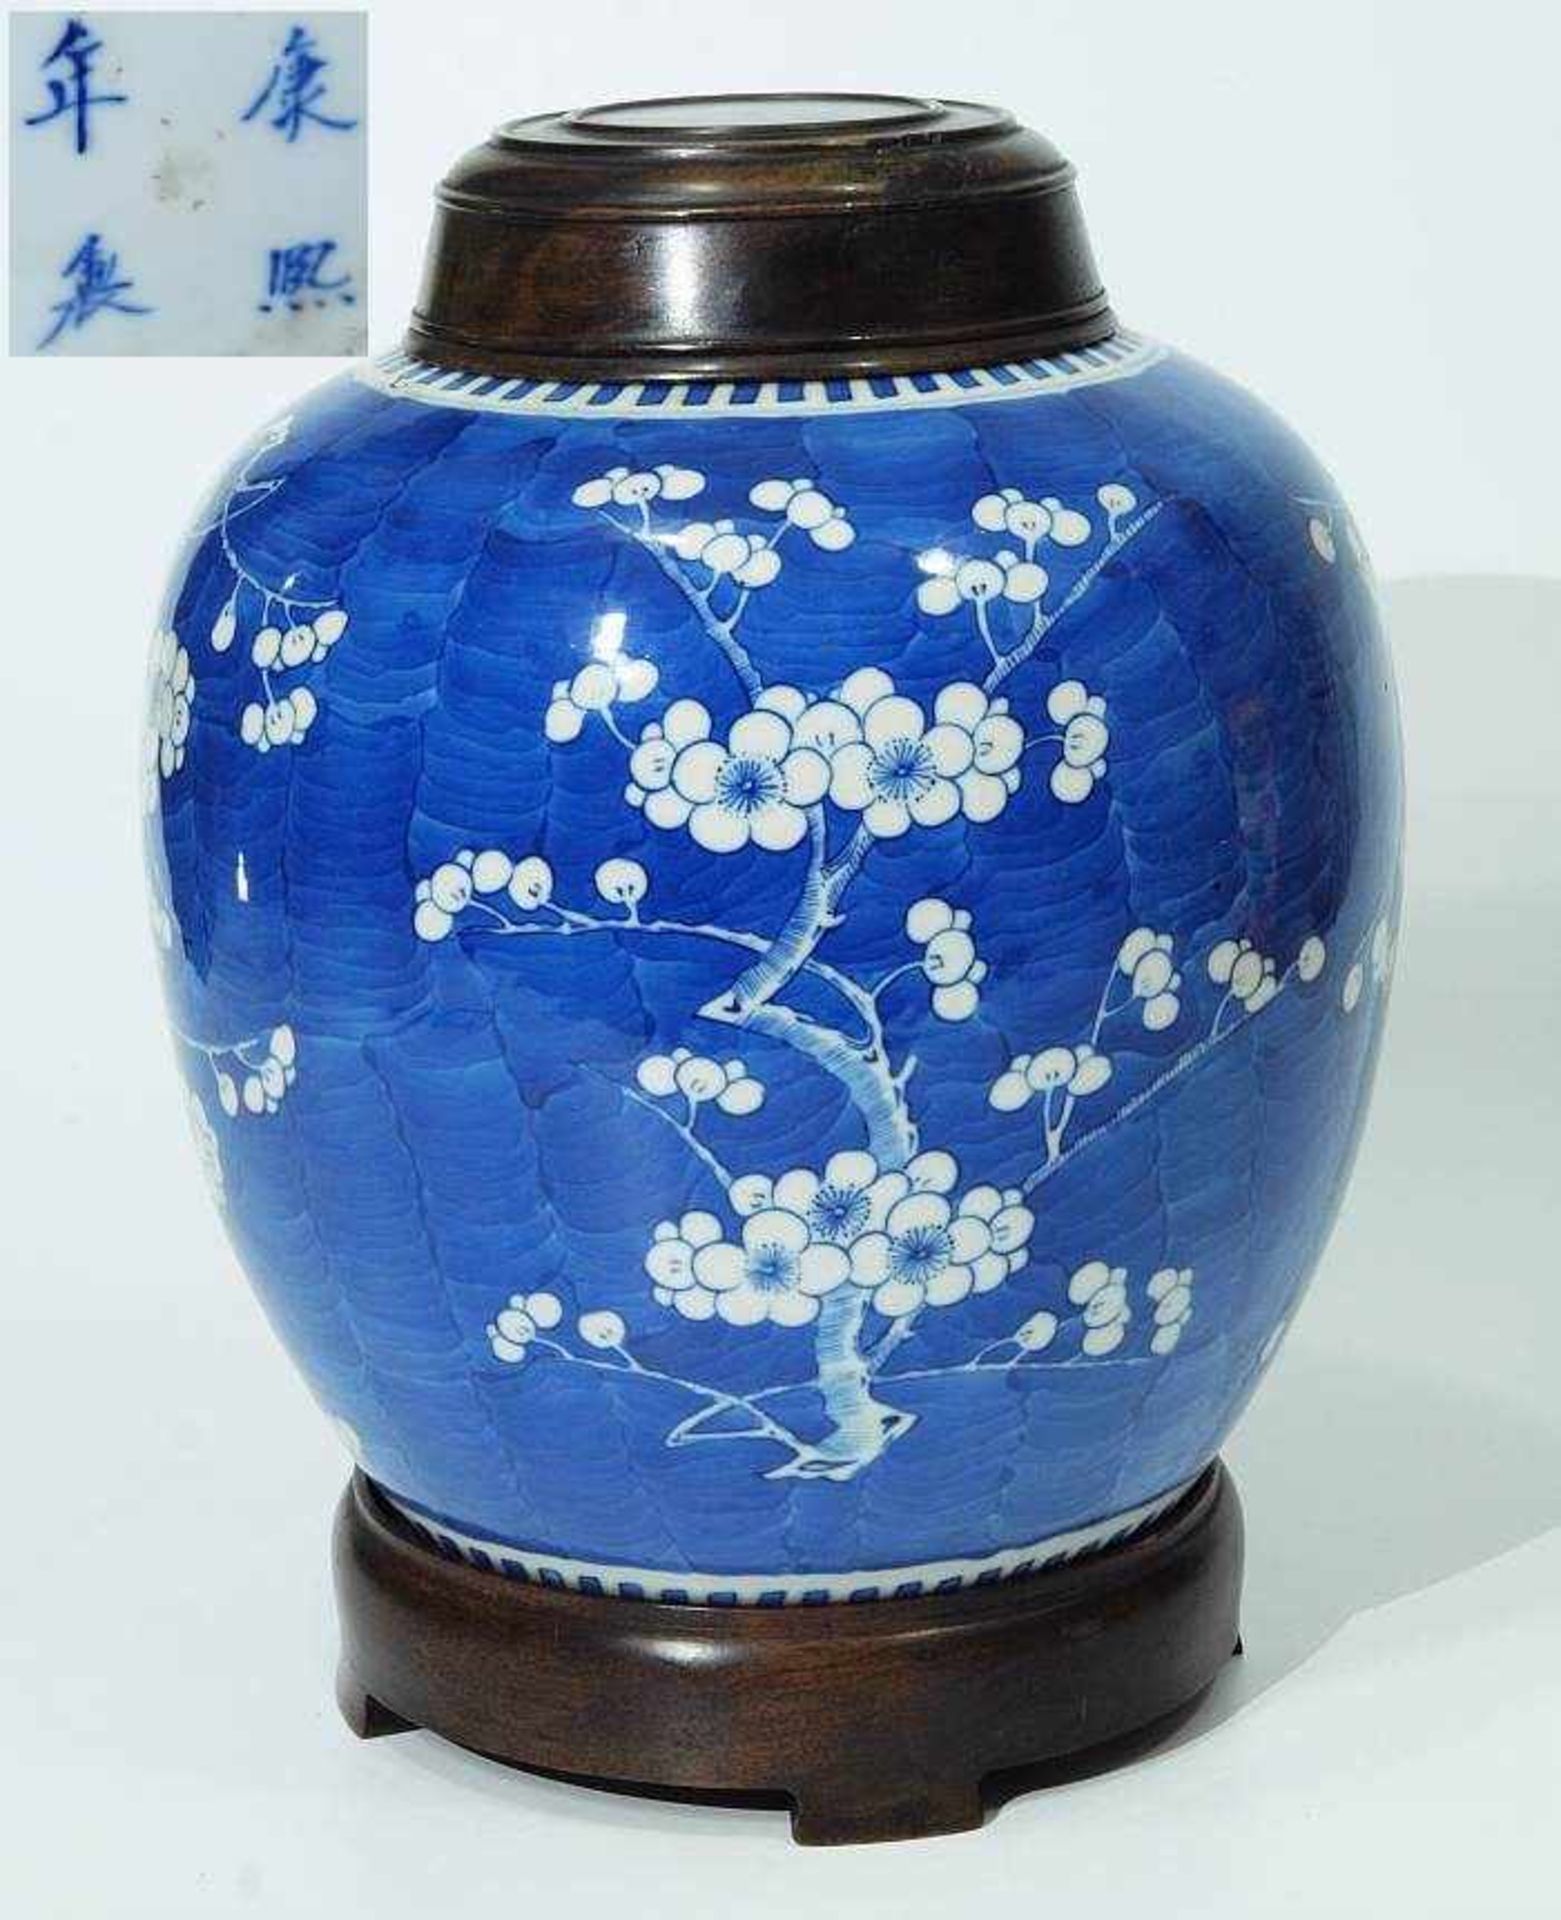 Teedose/Deckeldose. Teedose/Deckeldose. Shanghai, 19. Jahrhundert. Blau-weißes Floraldekor. Bauchige